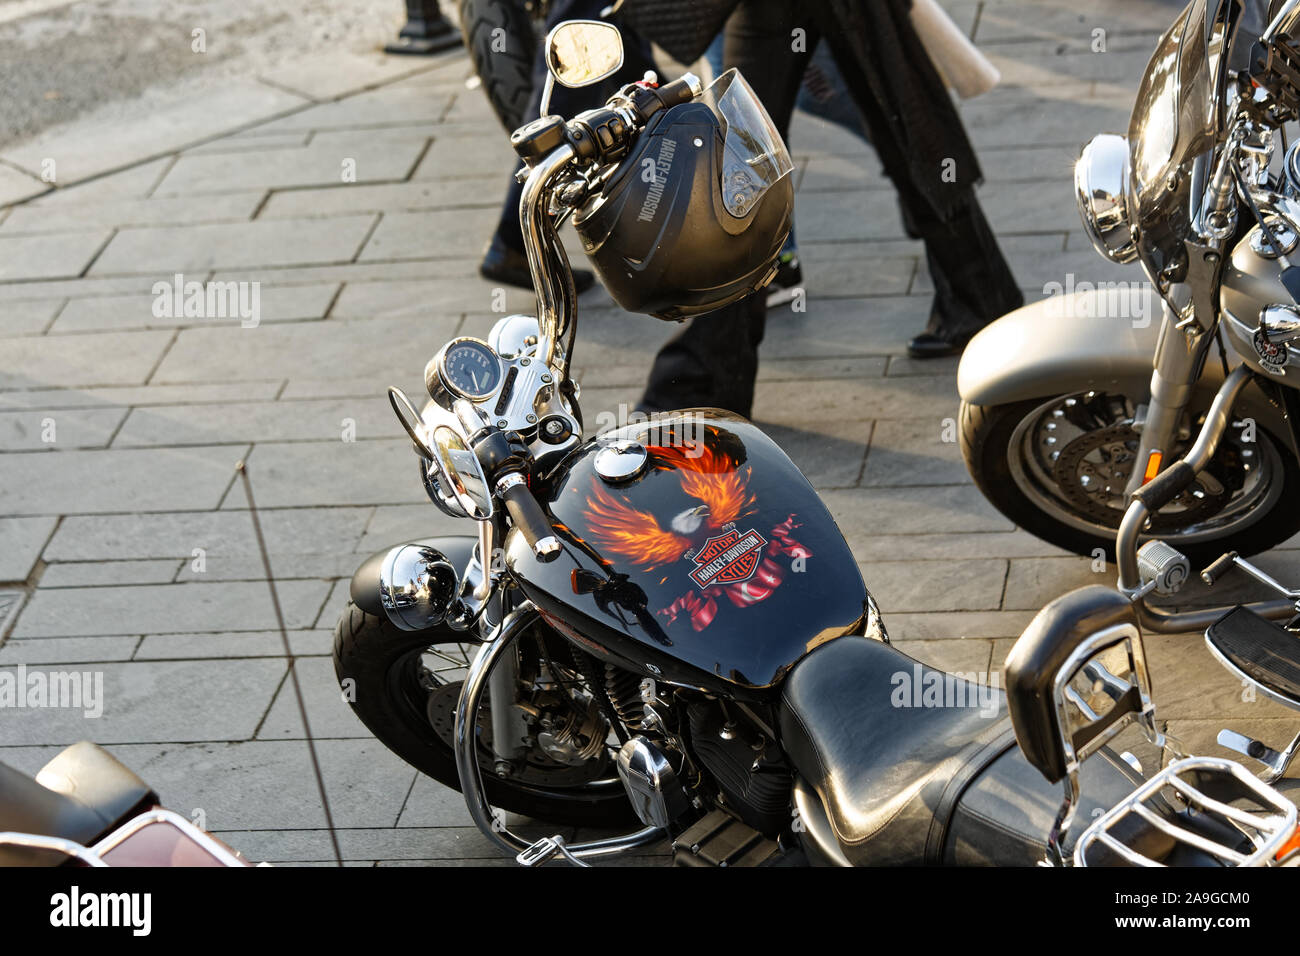 Harley Davidson de planche de bord du broyeur et le réservoir de combustible peint avec eagle et gravure drapeau turc. Casque de protection pendu sur la poignée. Banque D'Images